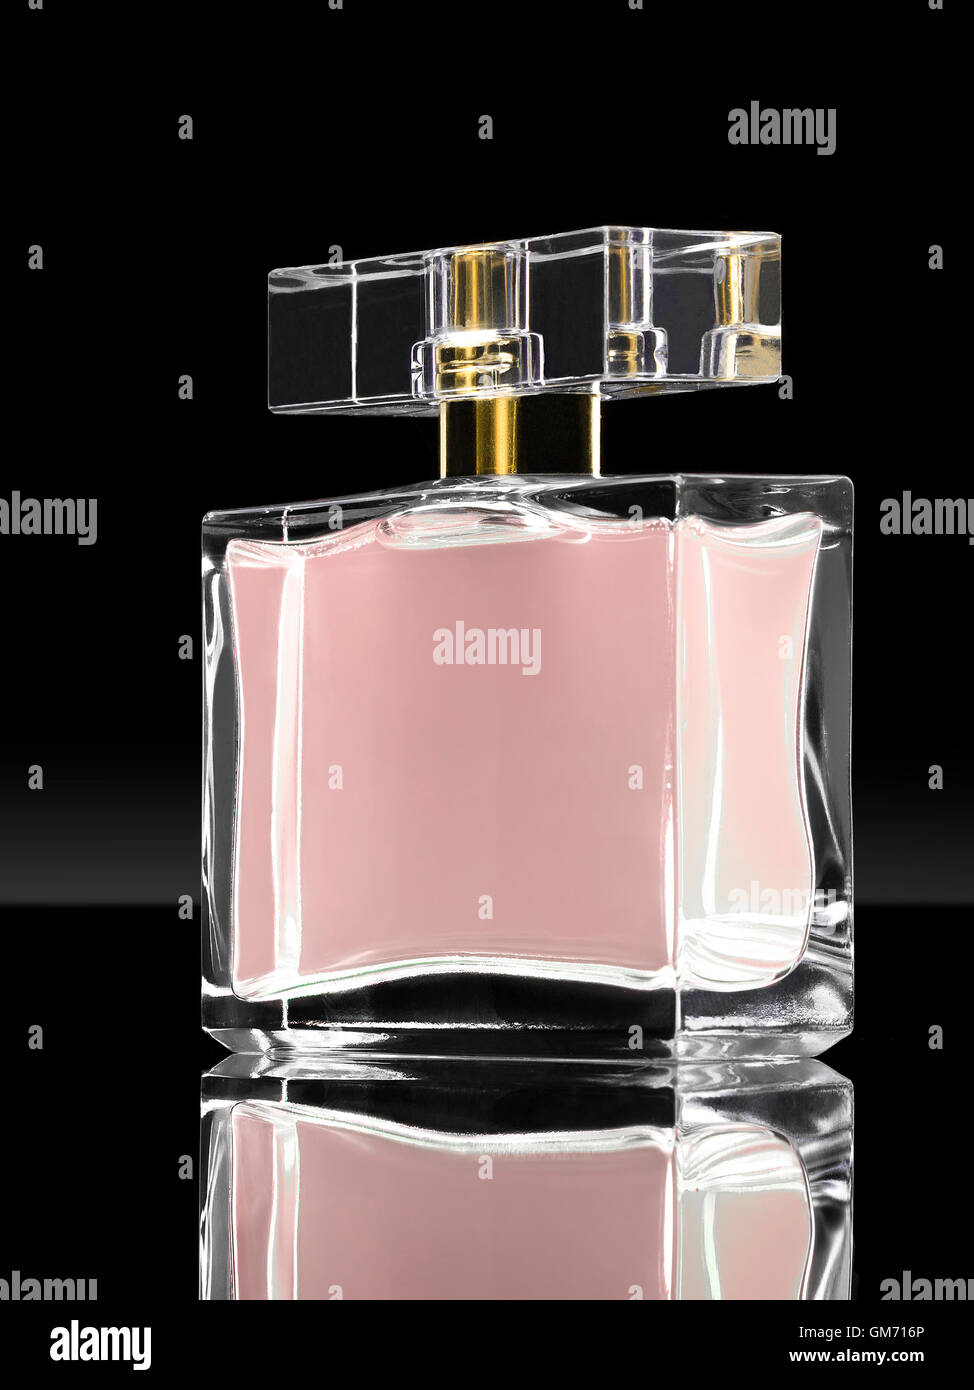 Immagine scura di cosmetici fragranze in cristal contenitore Foto Stock